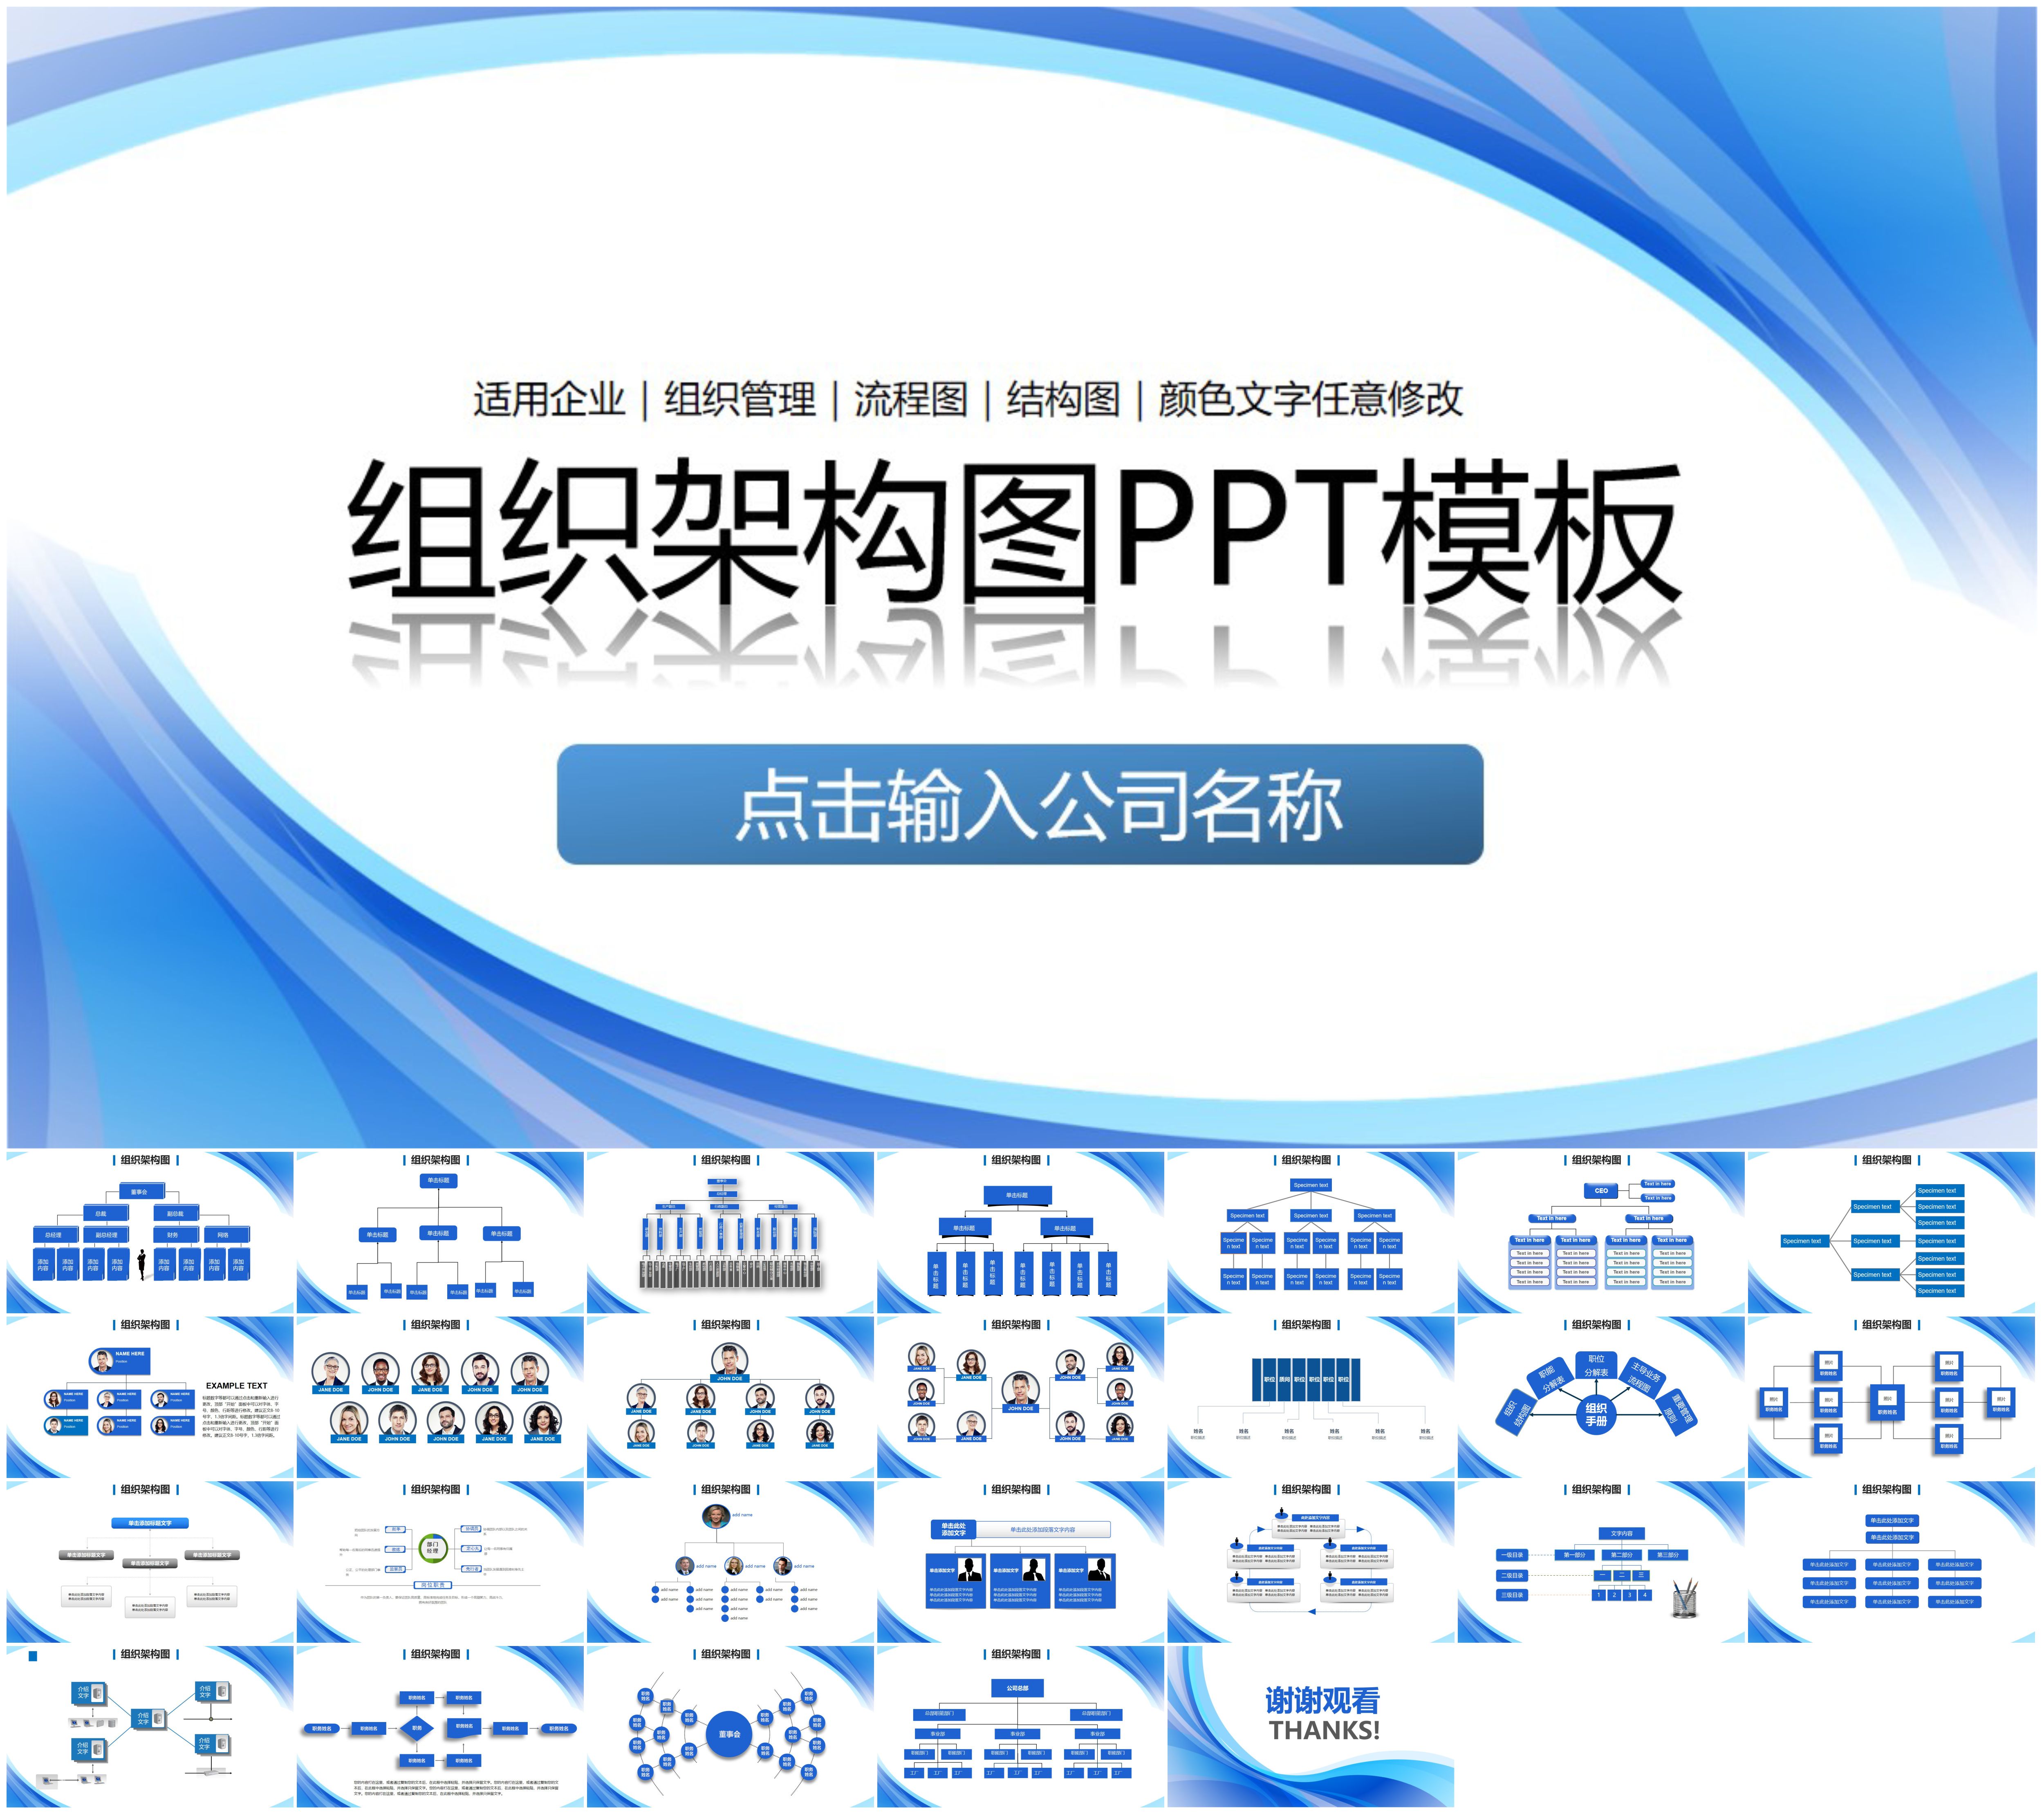 企业人事组织管理结构流程图PPT模板企业架构图集团管理PPT素材